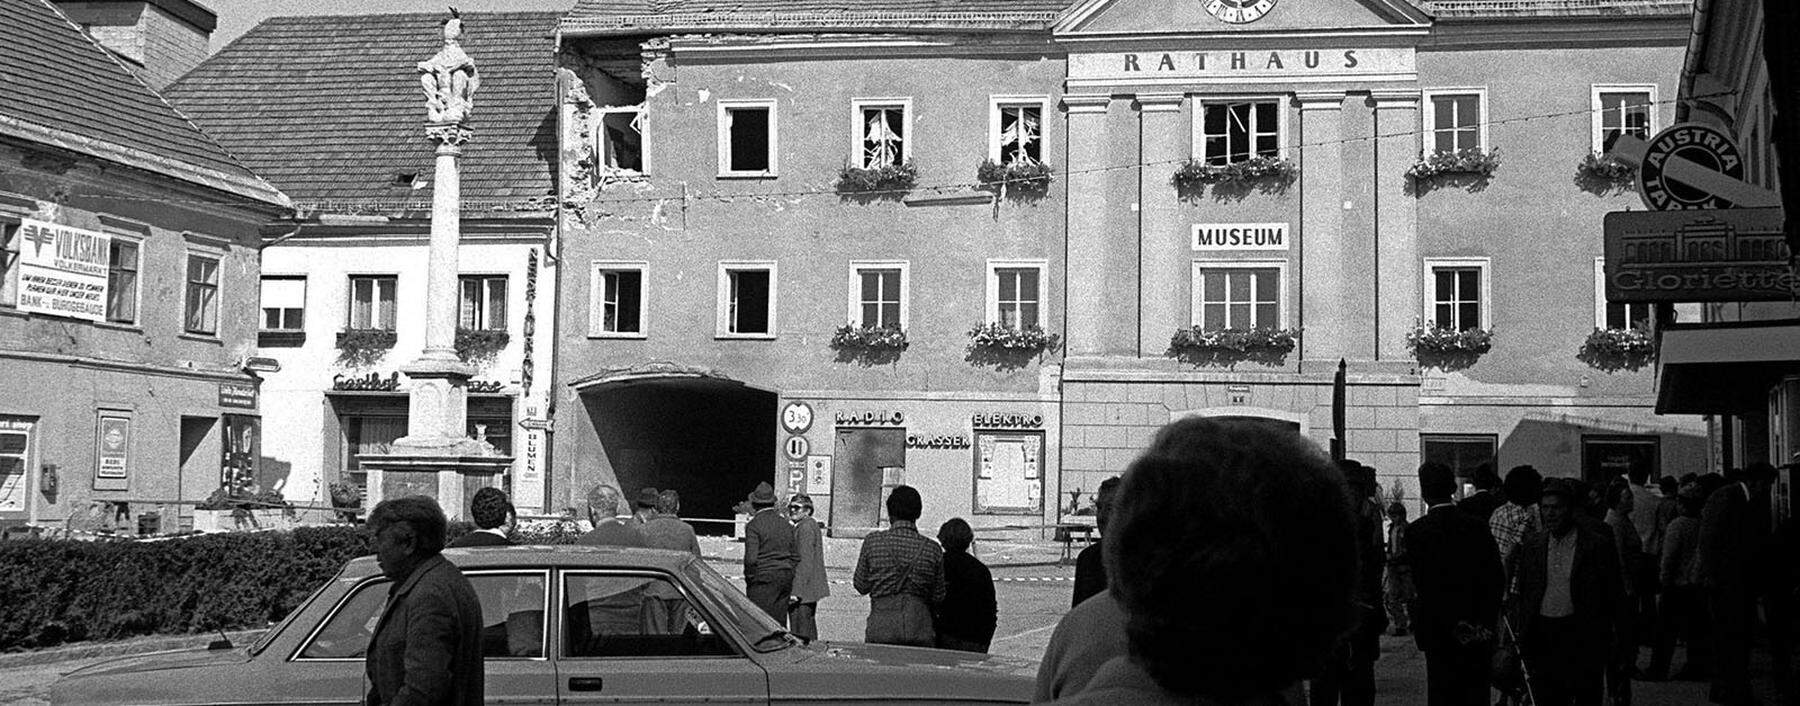 Bei der versuchten Sprengung des Völkermarkter Heimatmuseums am 18. September 1979 wurden drei Menschen verletzt – der Museumskustos und die beiden Bombenleger.